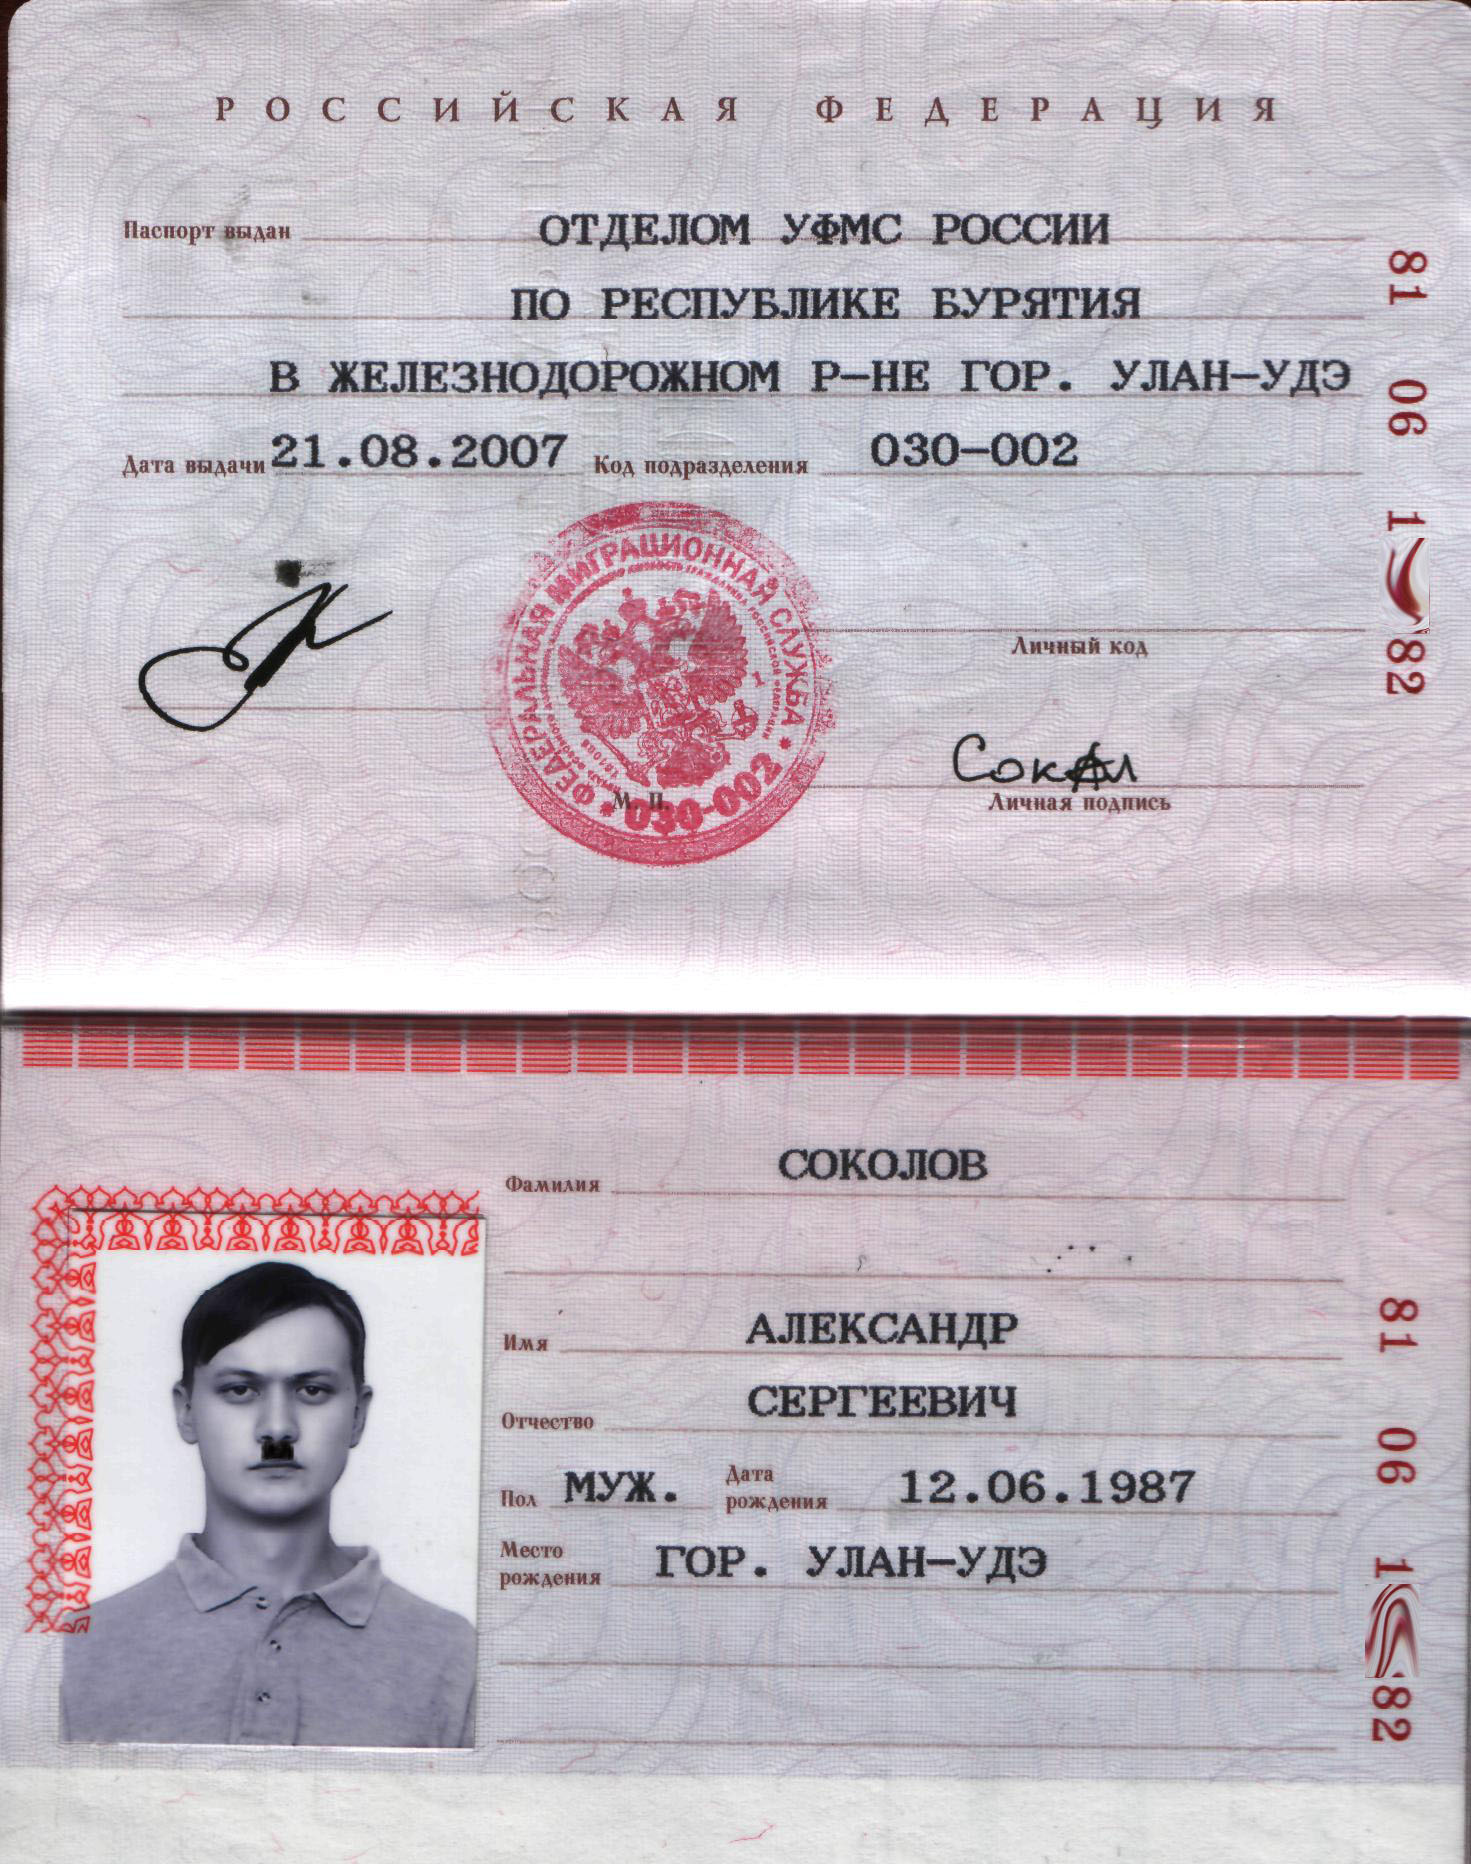 фото на паспорт магнитогорск адреса